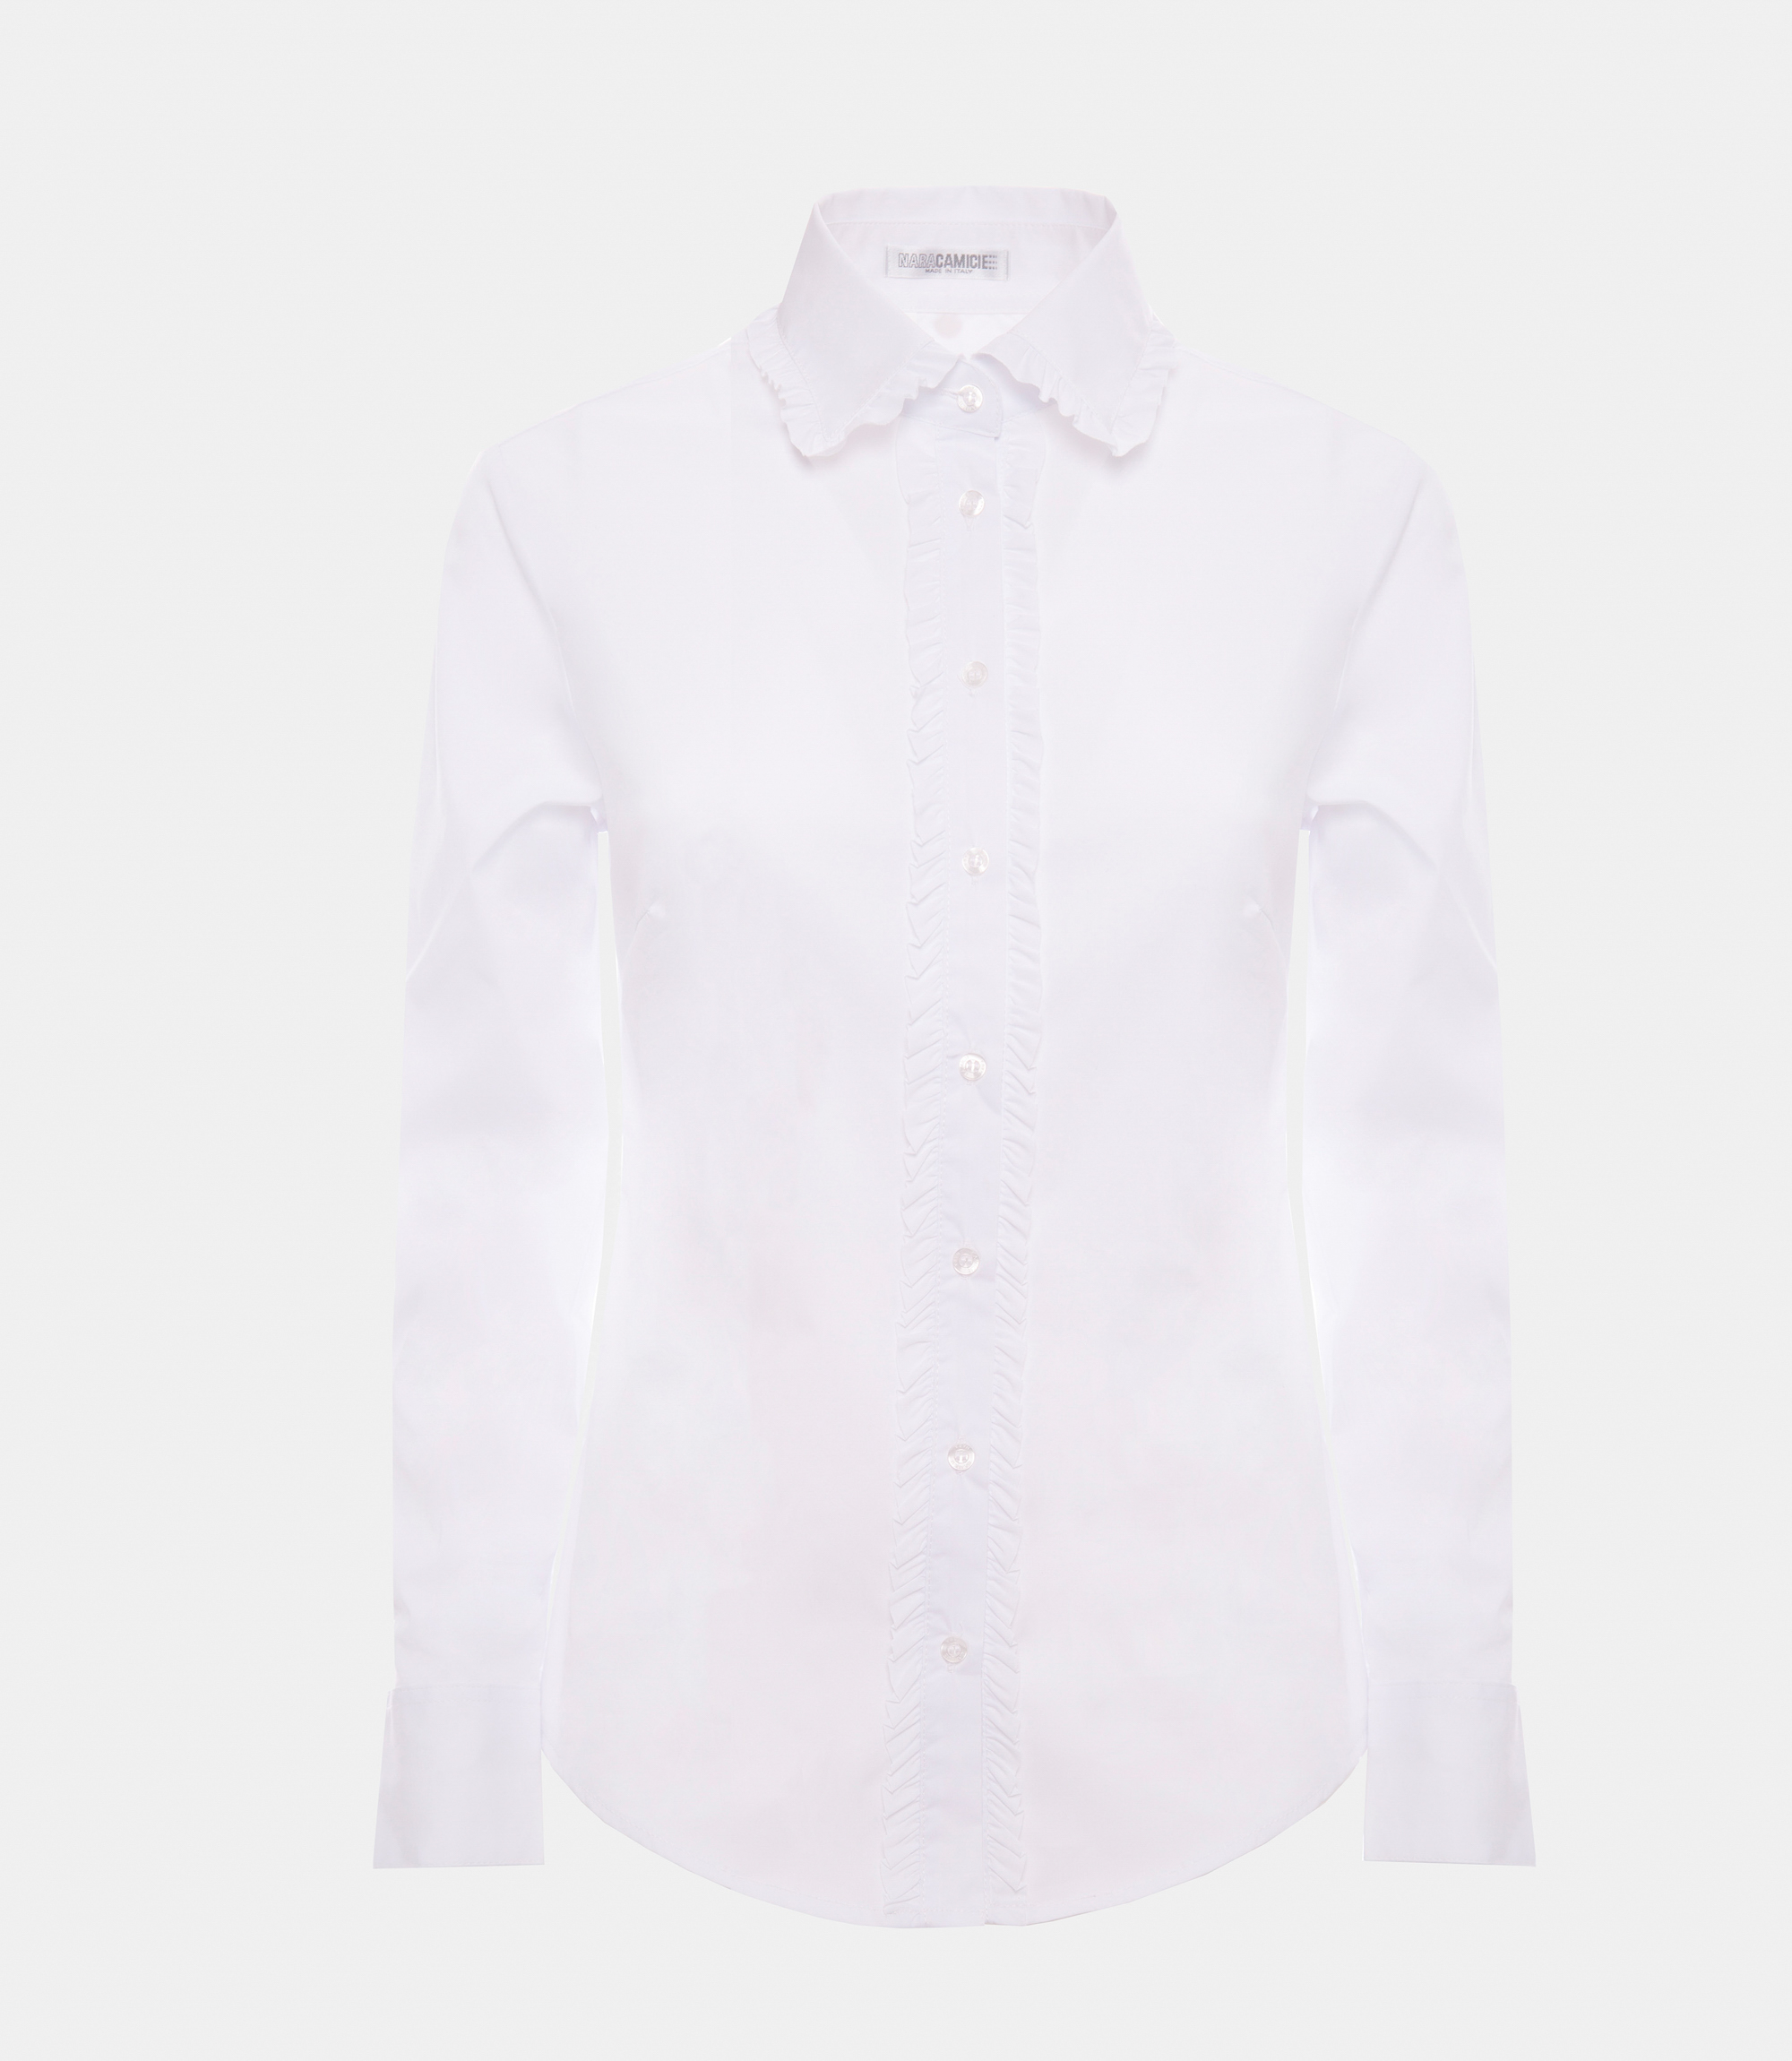 Shirt with mini rouches - White - Nara Milano